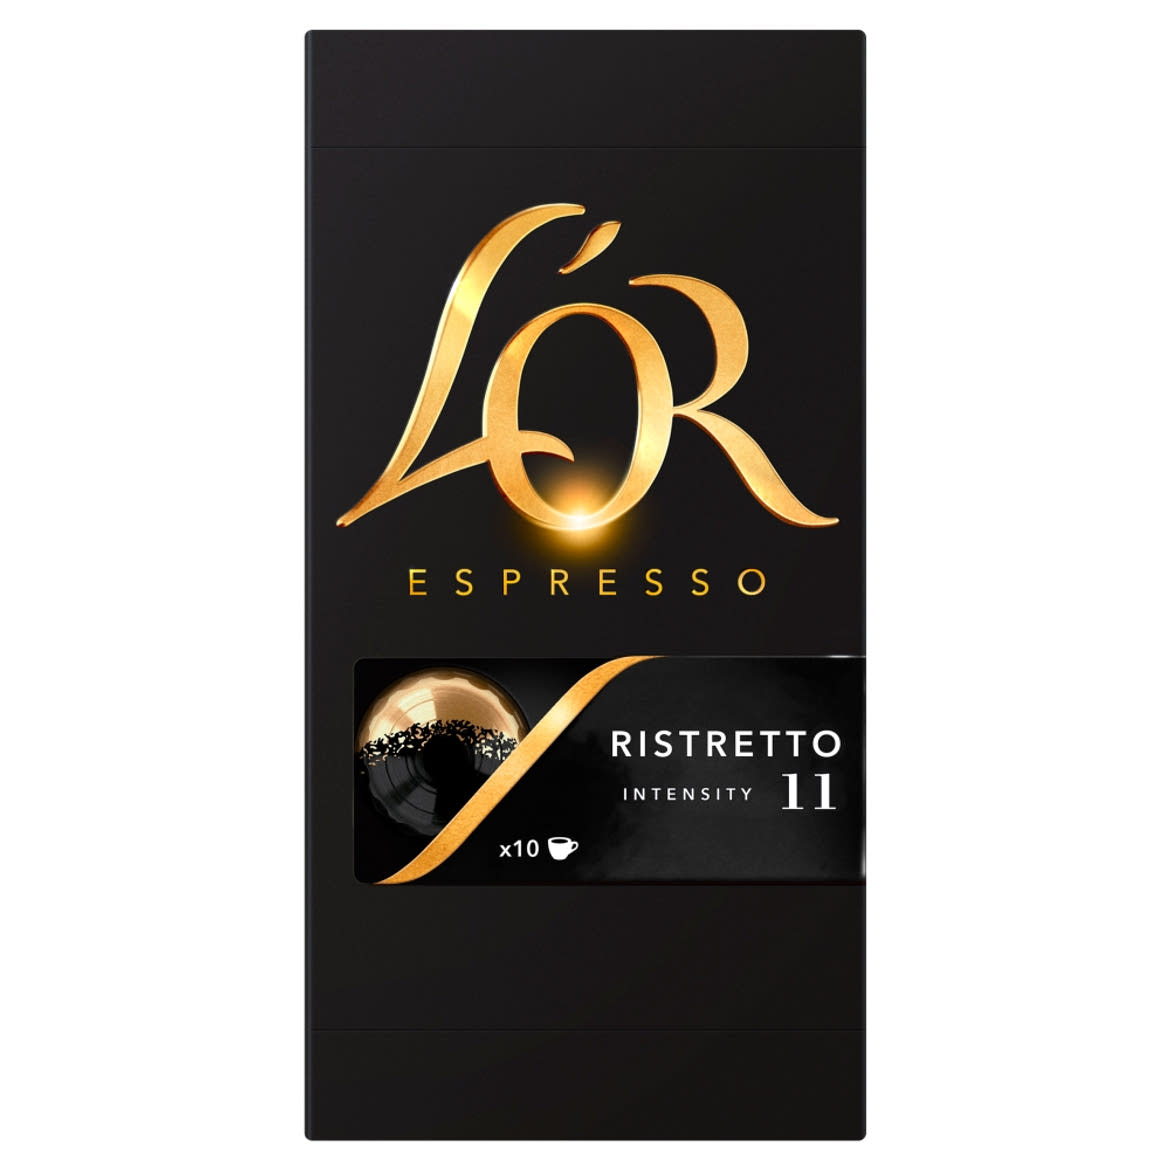 L'OR Espresso Ristretto őrölt-pörkölt kávé kapszulában